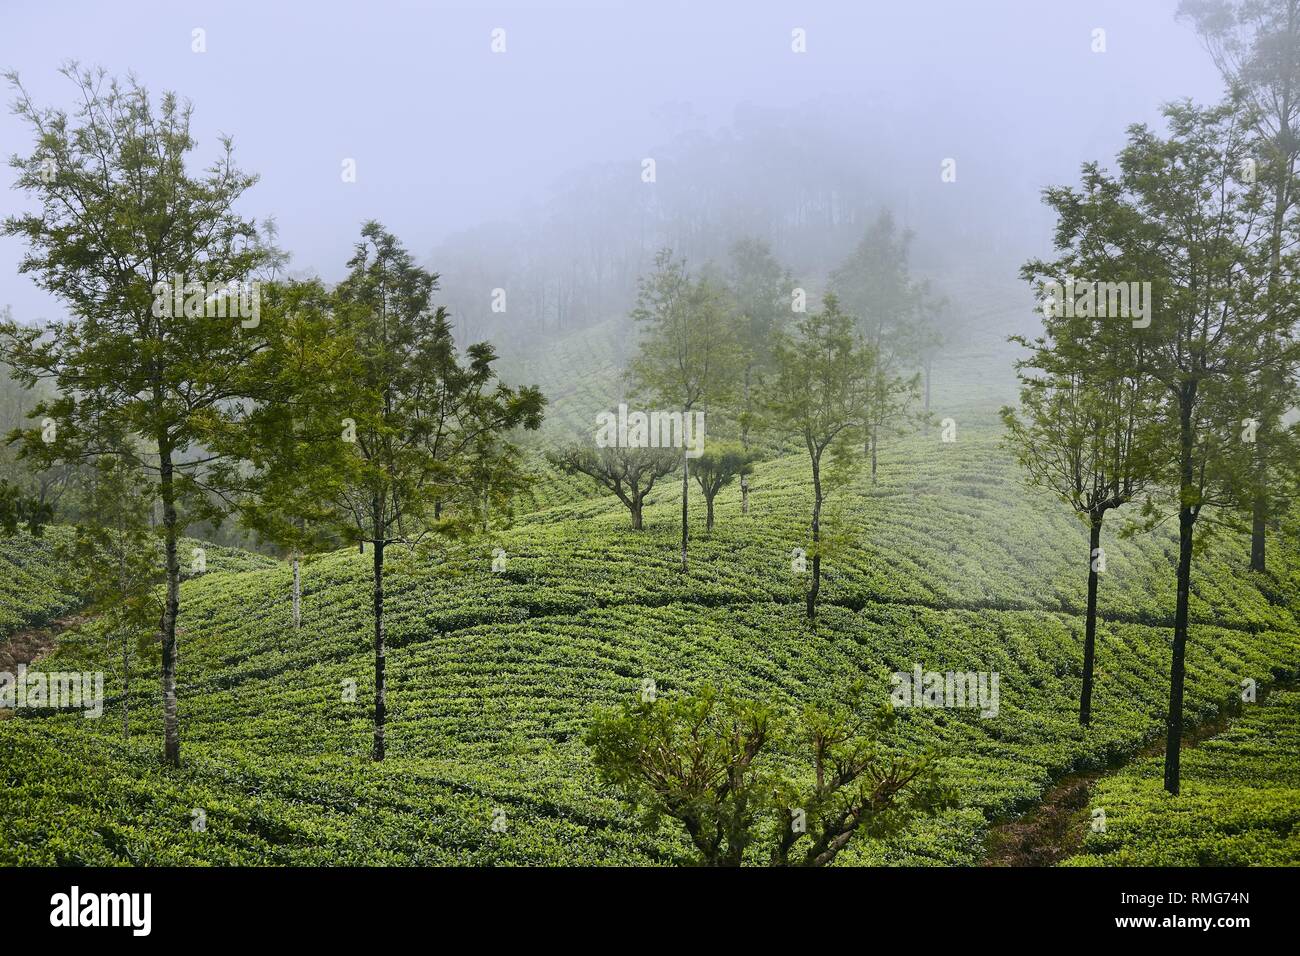 Les plantations de thé dans les nuages. L'agriculture paysage près d'Haputale au Sri Lanka. Banque D'Images